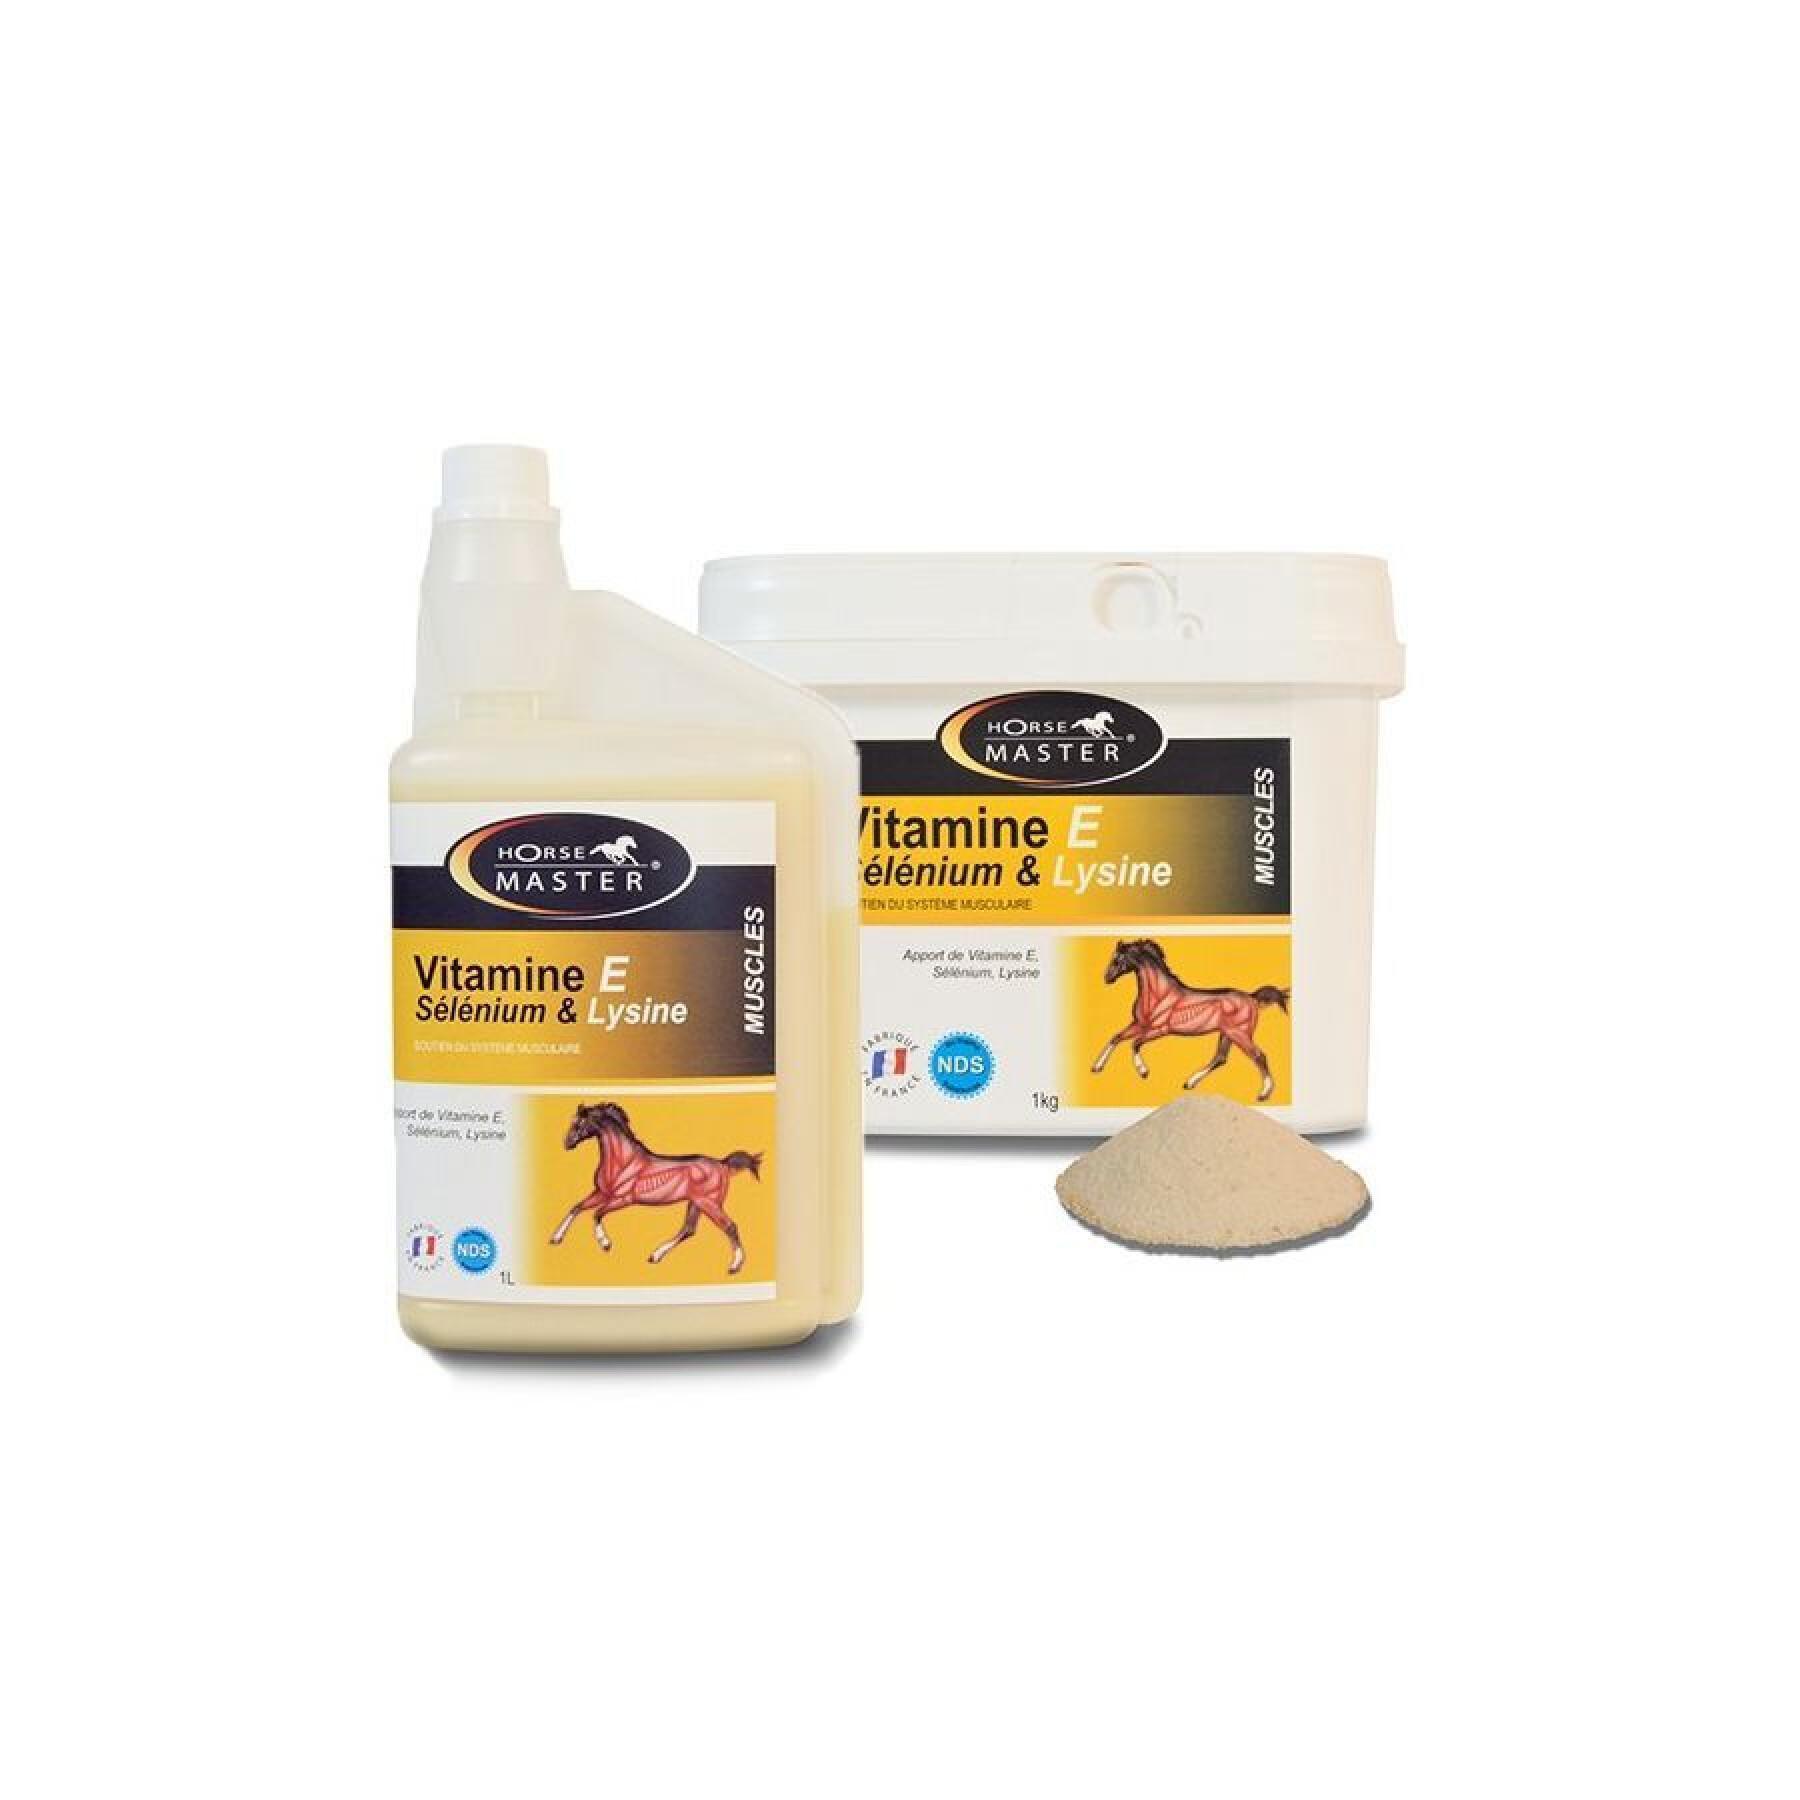 Vitaminas e - selenio - lisina - polvo para caballos Horse Master